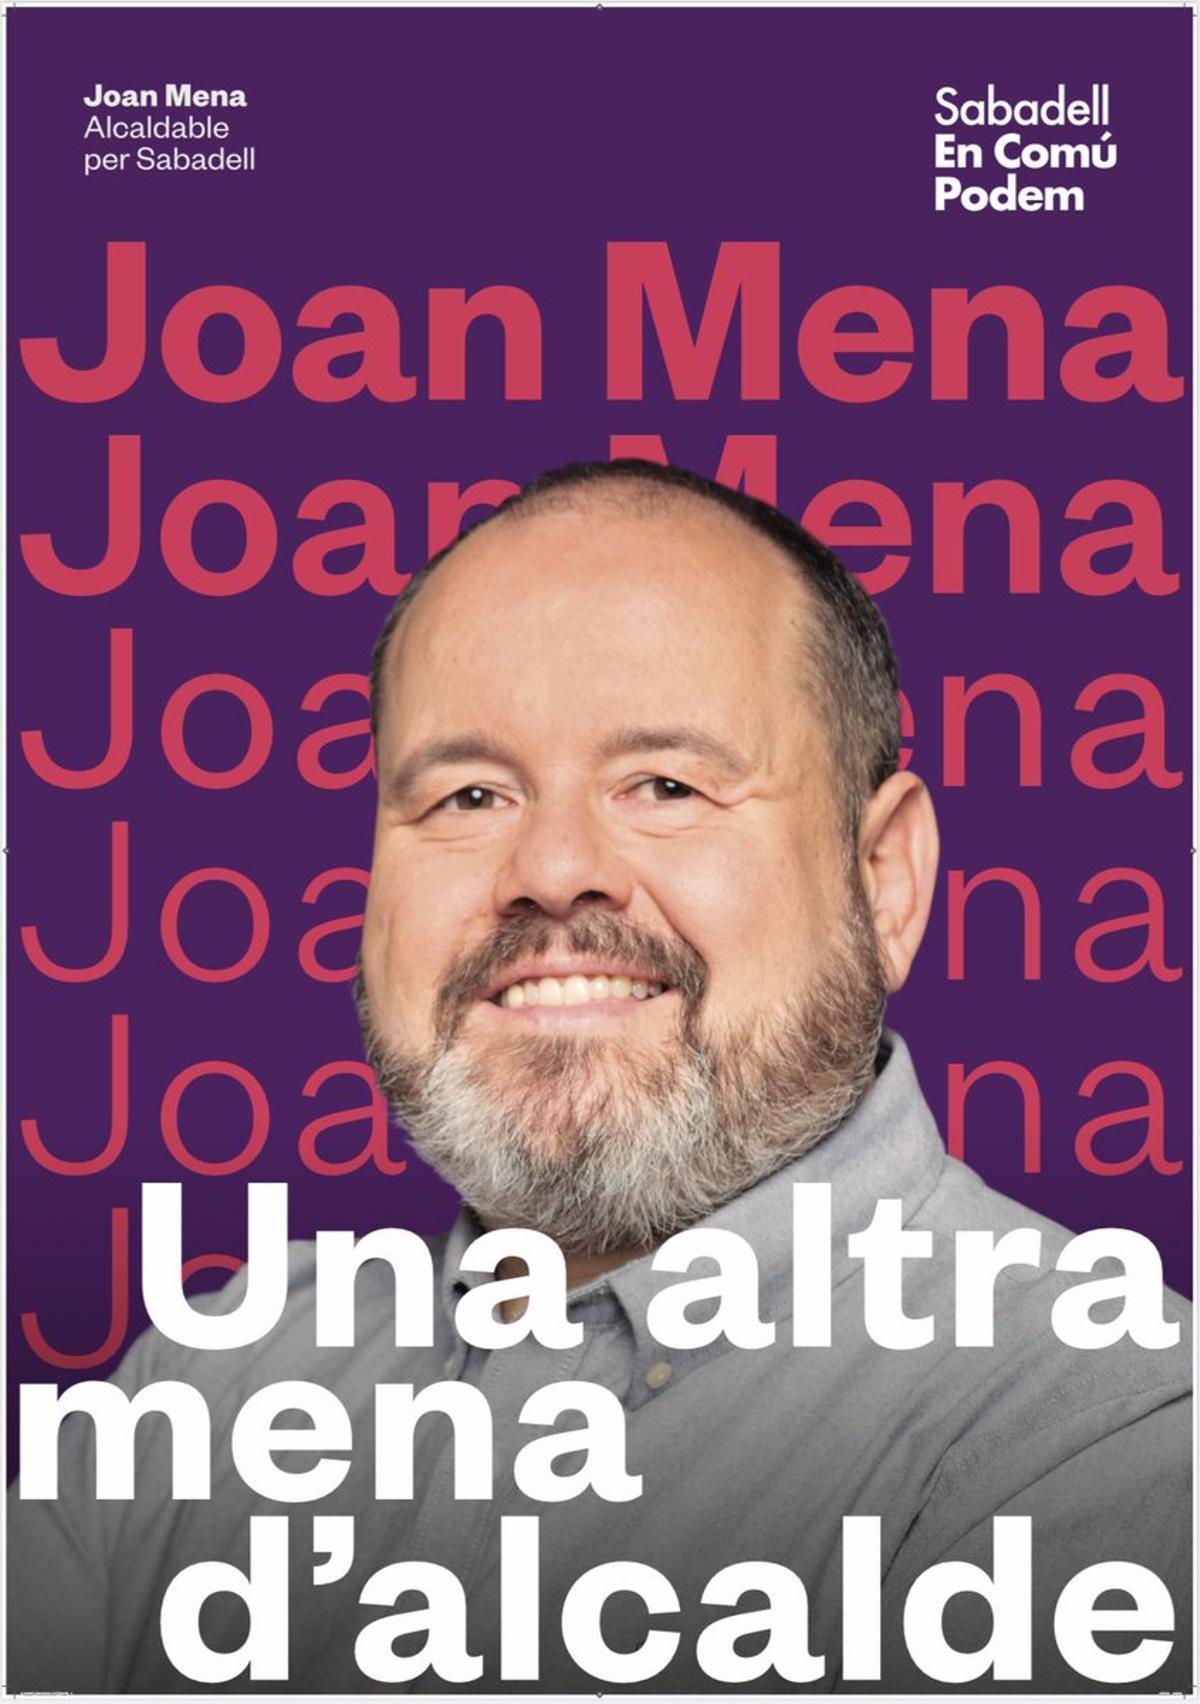 Una altra mena dalcalde significa otro tipo de alcalde y es el lema, con juego de palabras incluido, del candidato de Podemos en Sabadell, Joan Mena